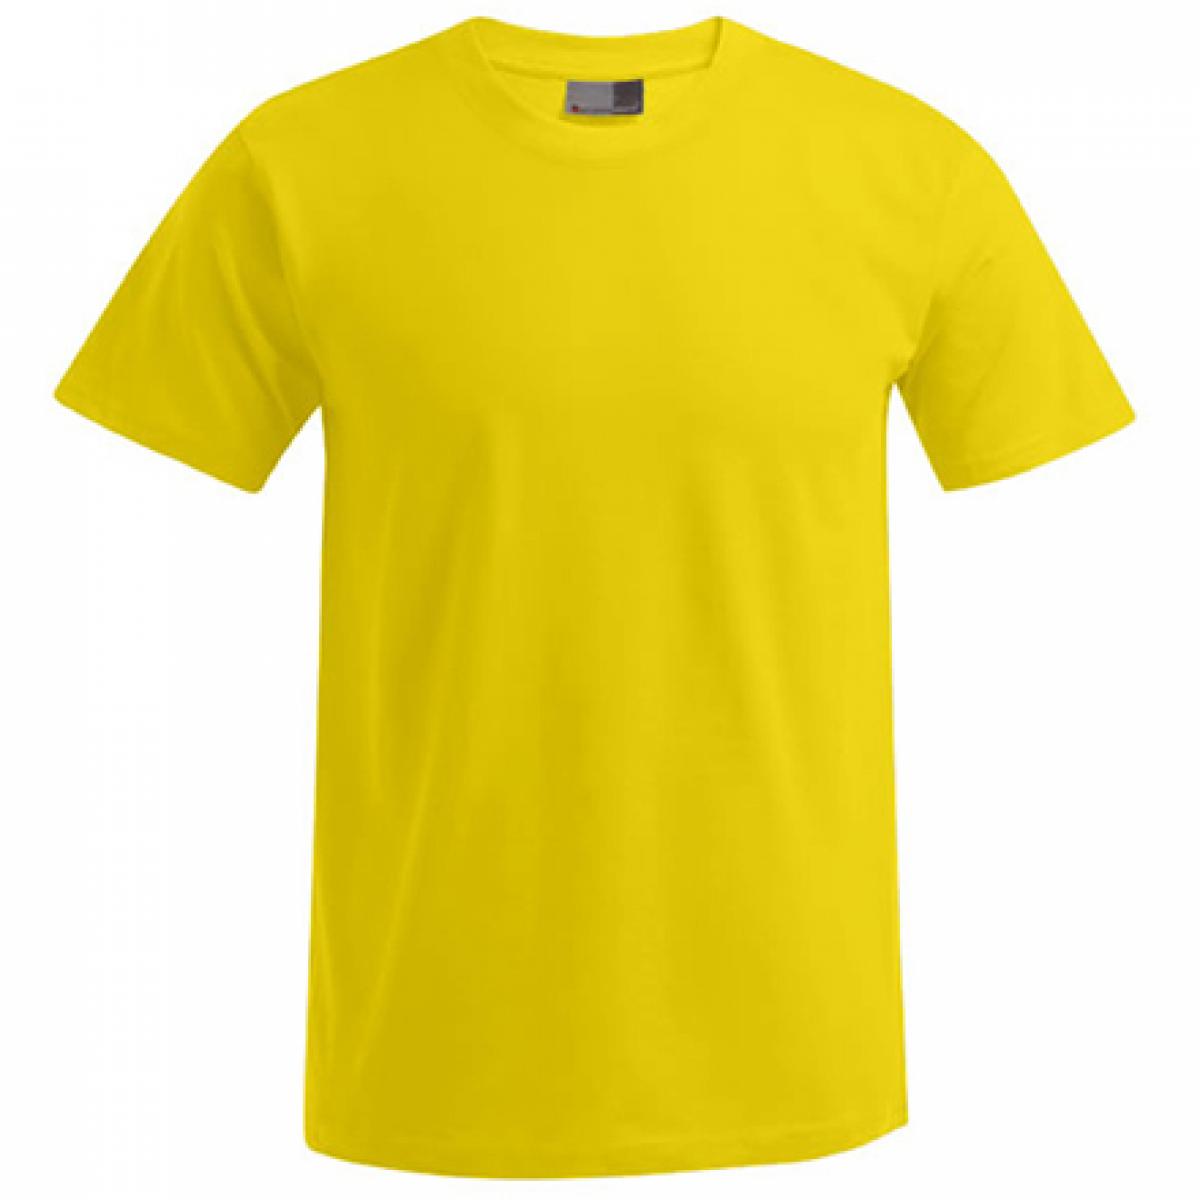 Hersteller: Promodoro Herstellernummer: 3000/3099 Artikelbezeichnung: Men´s Premium Herren T-Shirt - bis 5XL Farbe: Gold